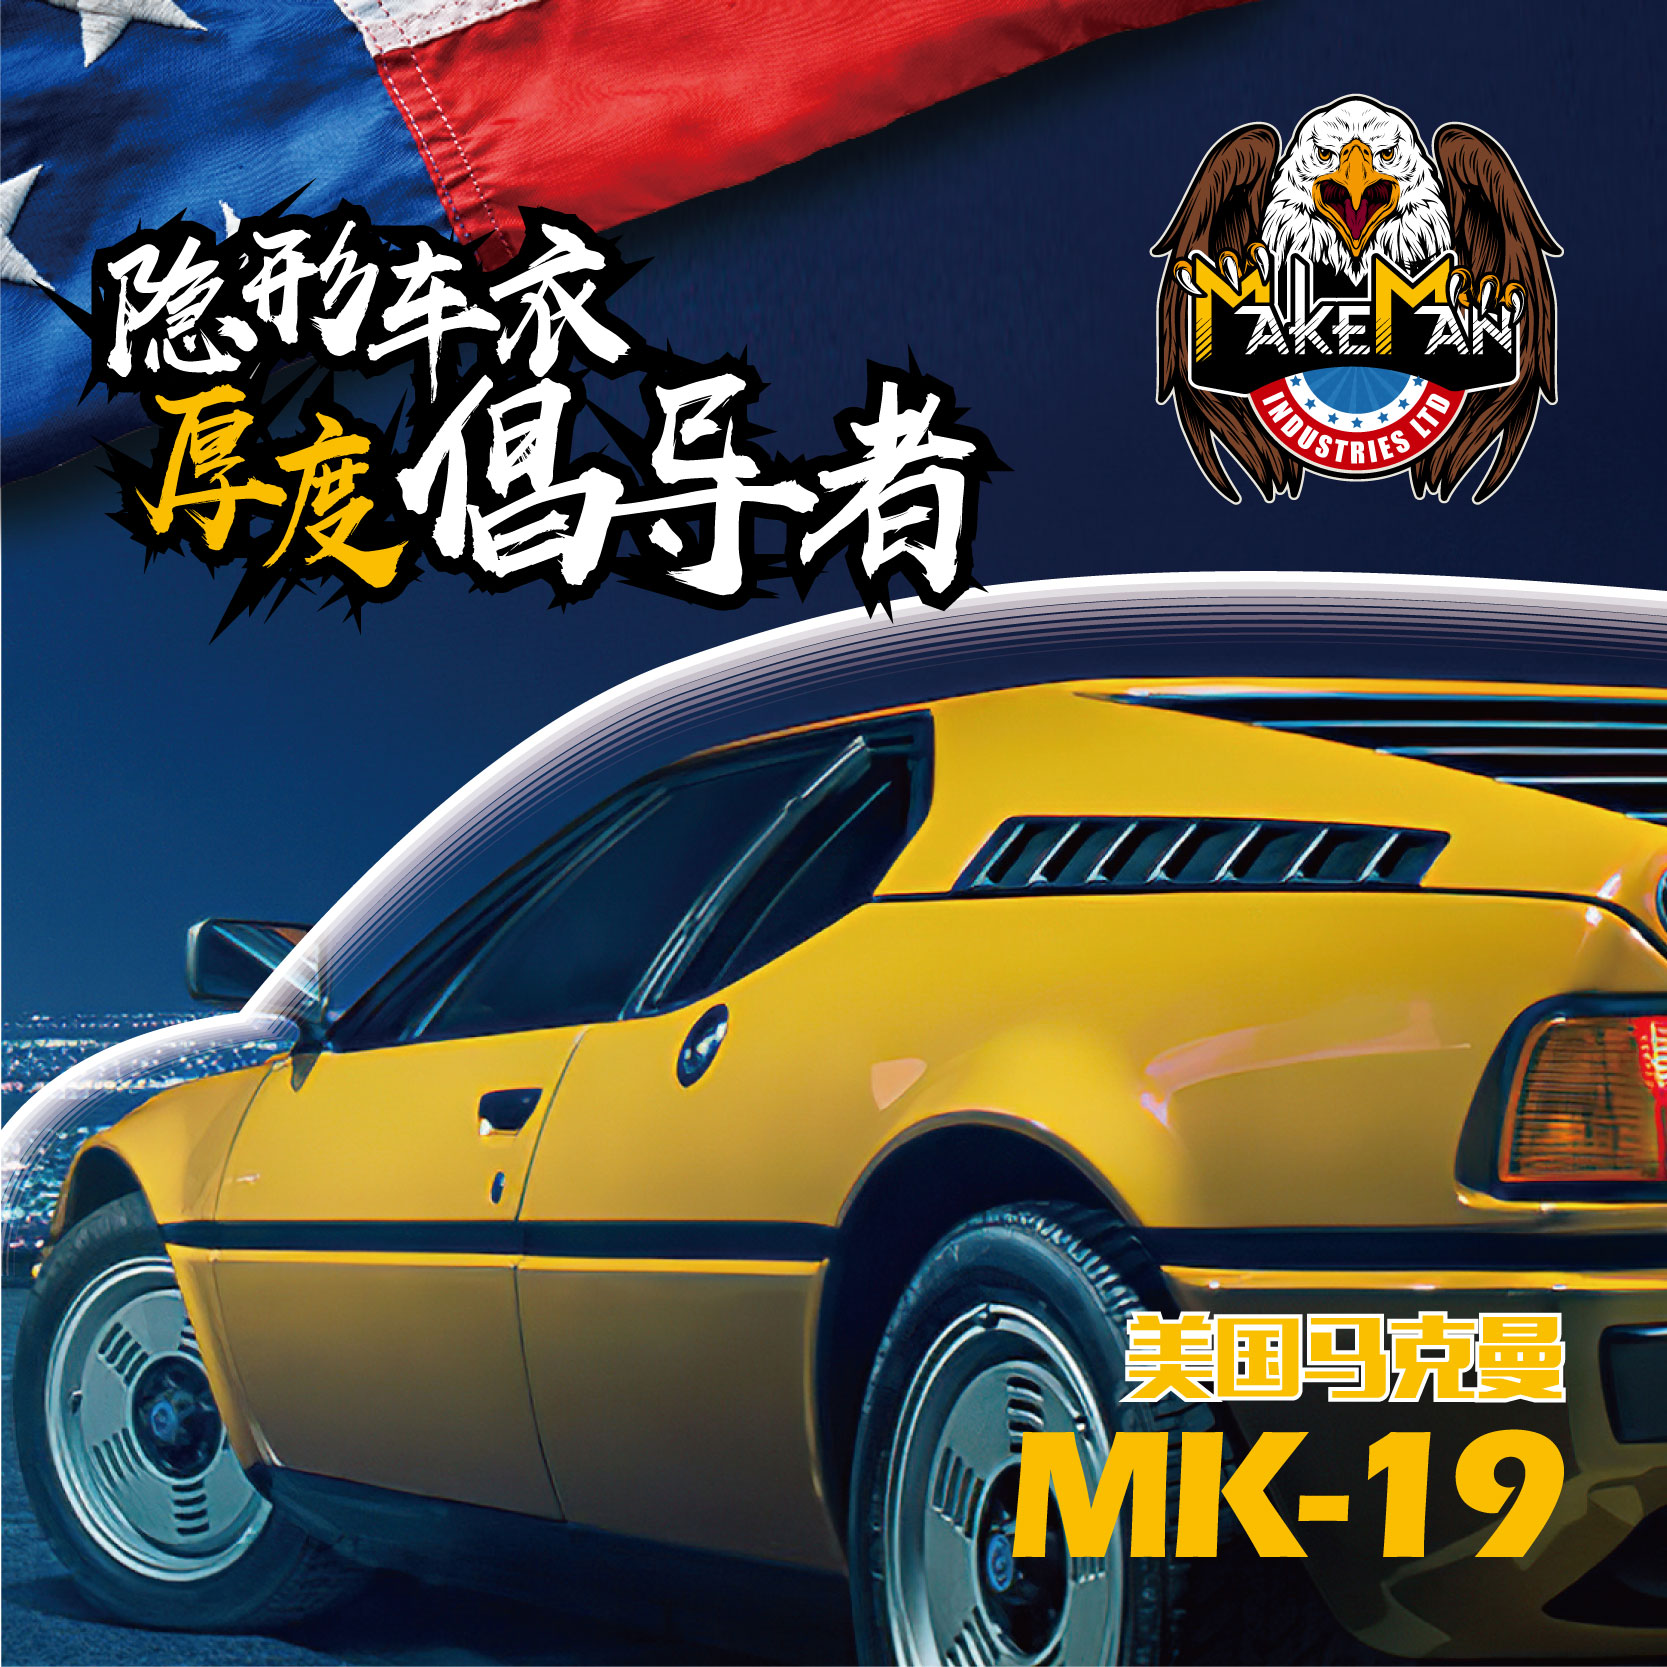 MK-19